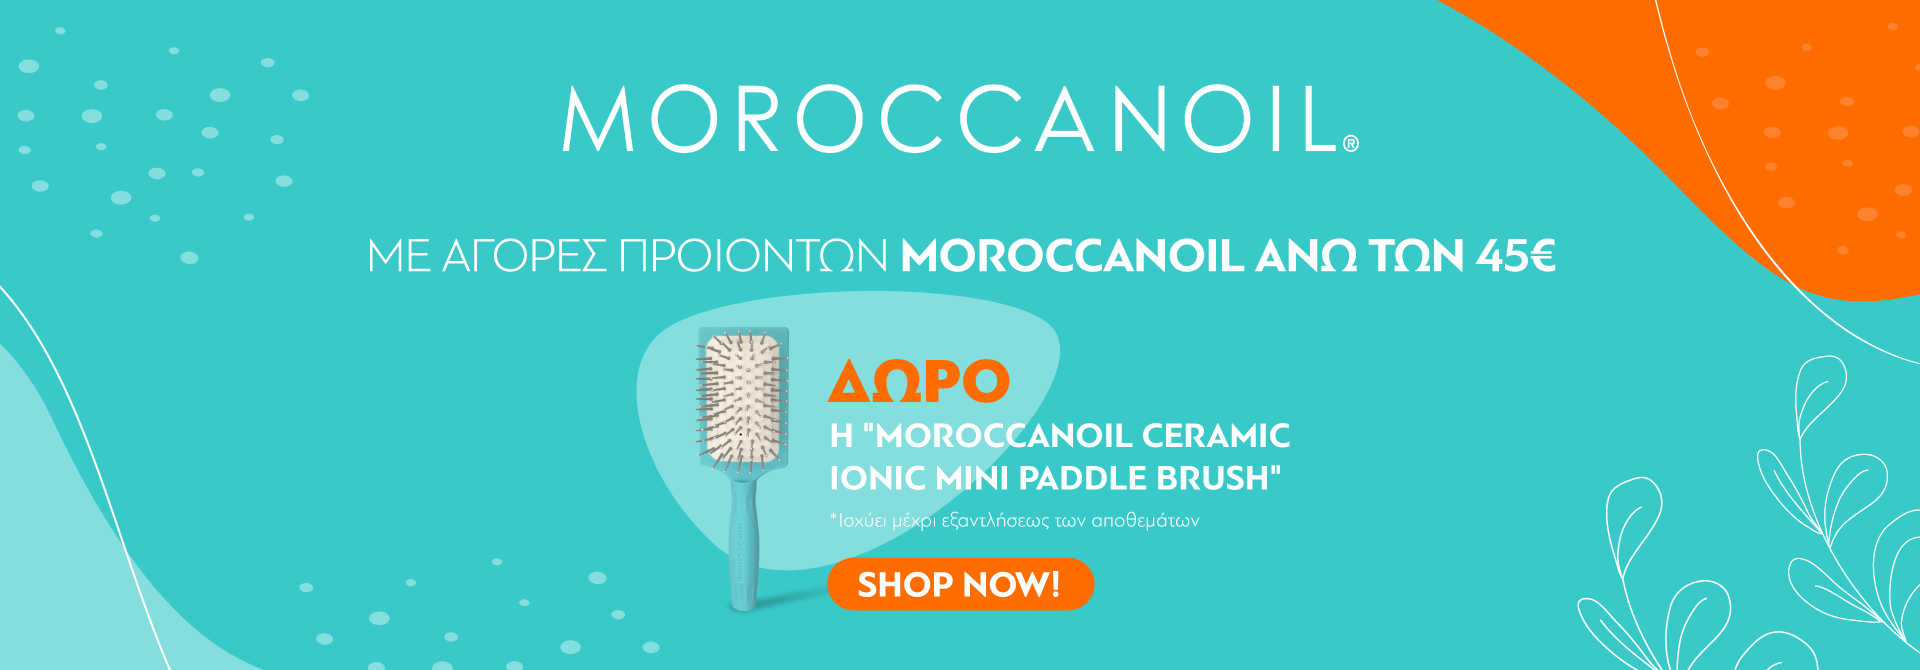 Moroccanoil New February Offer - Brush Gift